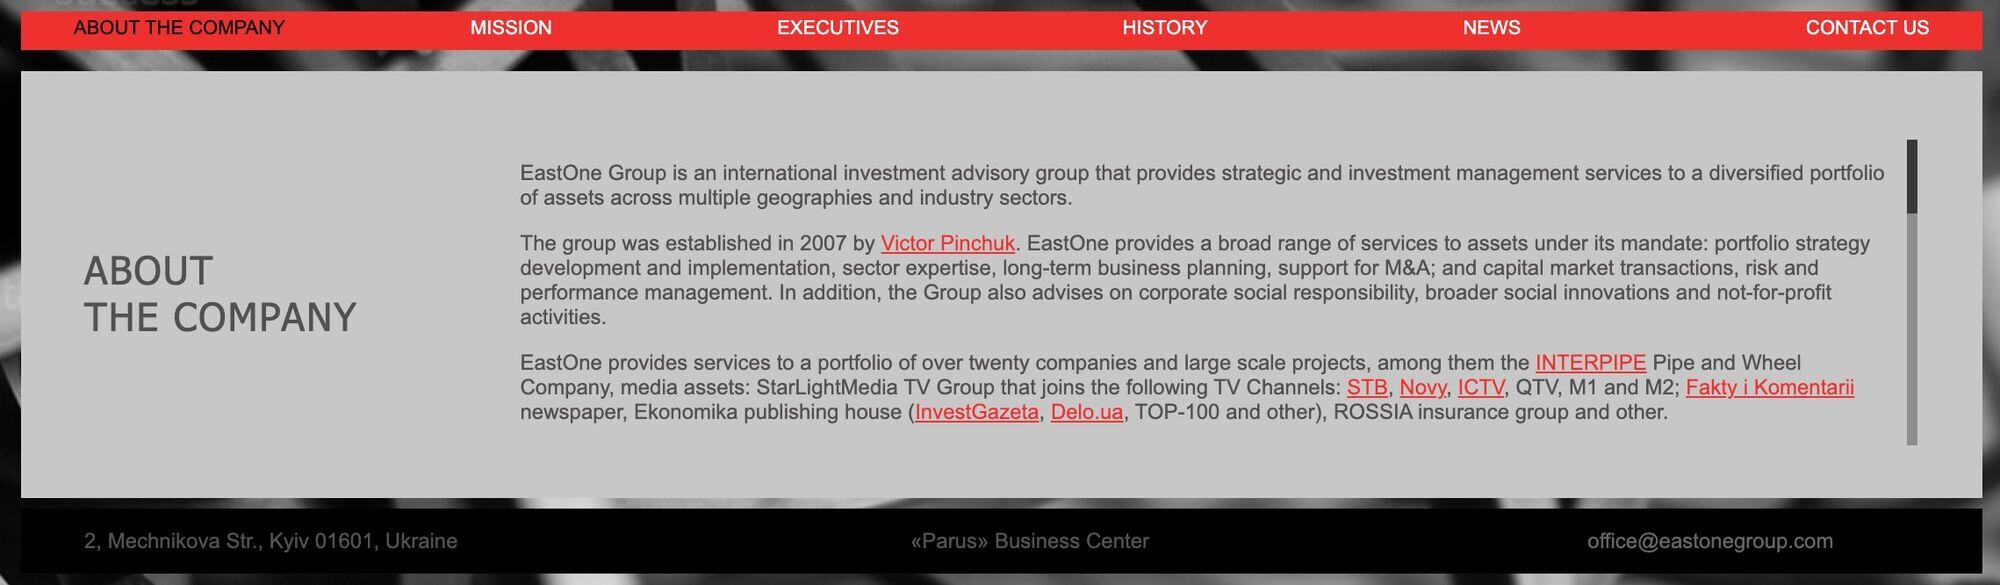 EastOne Group является бизнес-группой олигарха Виктора Пинчука